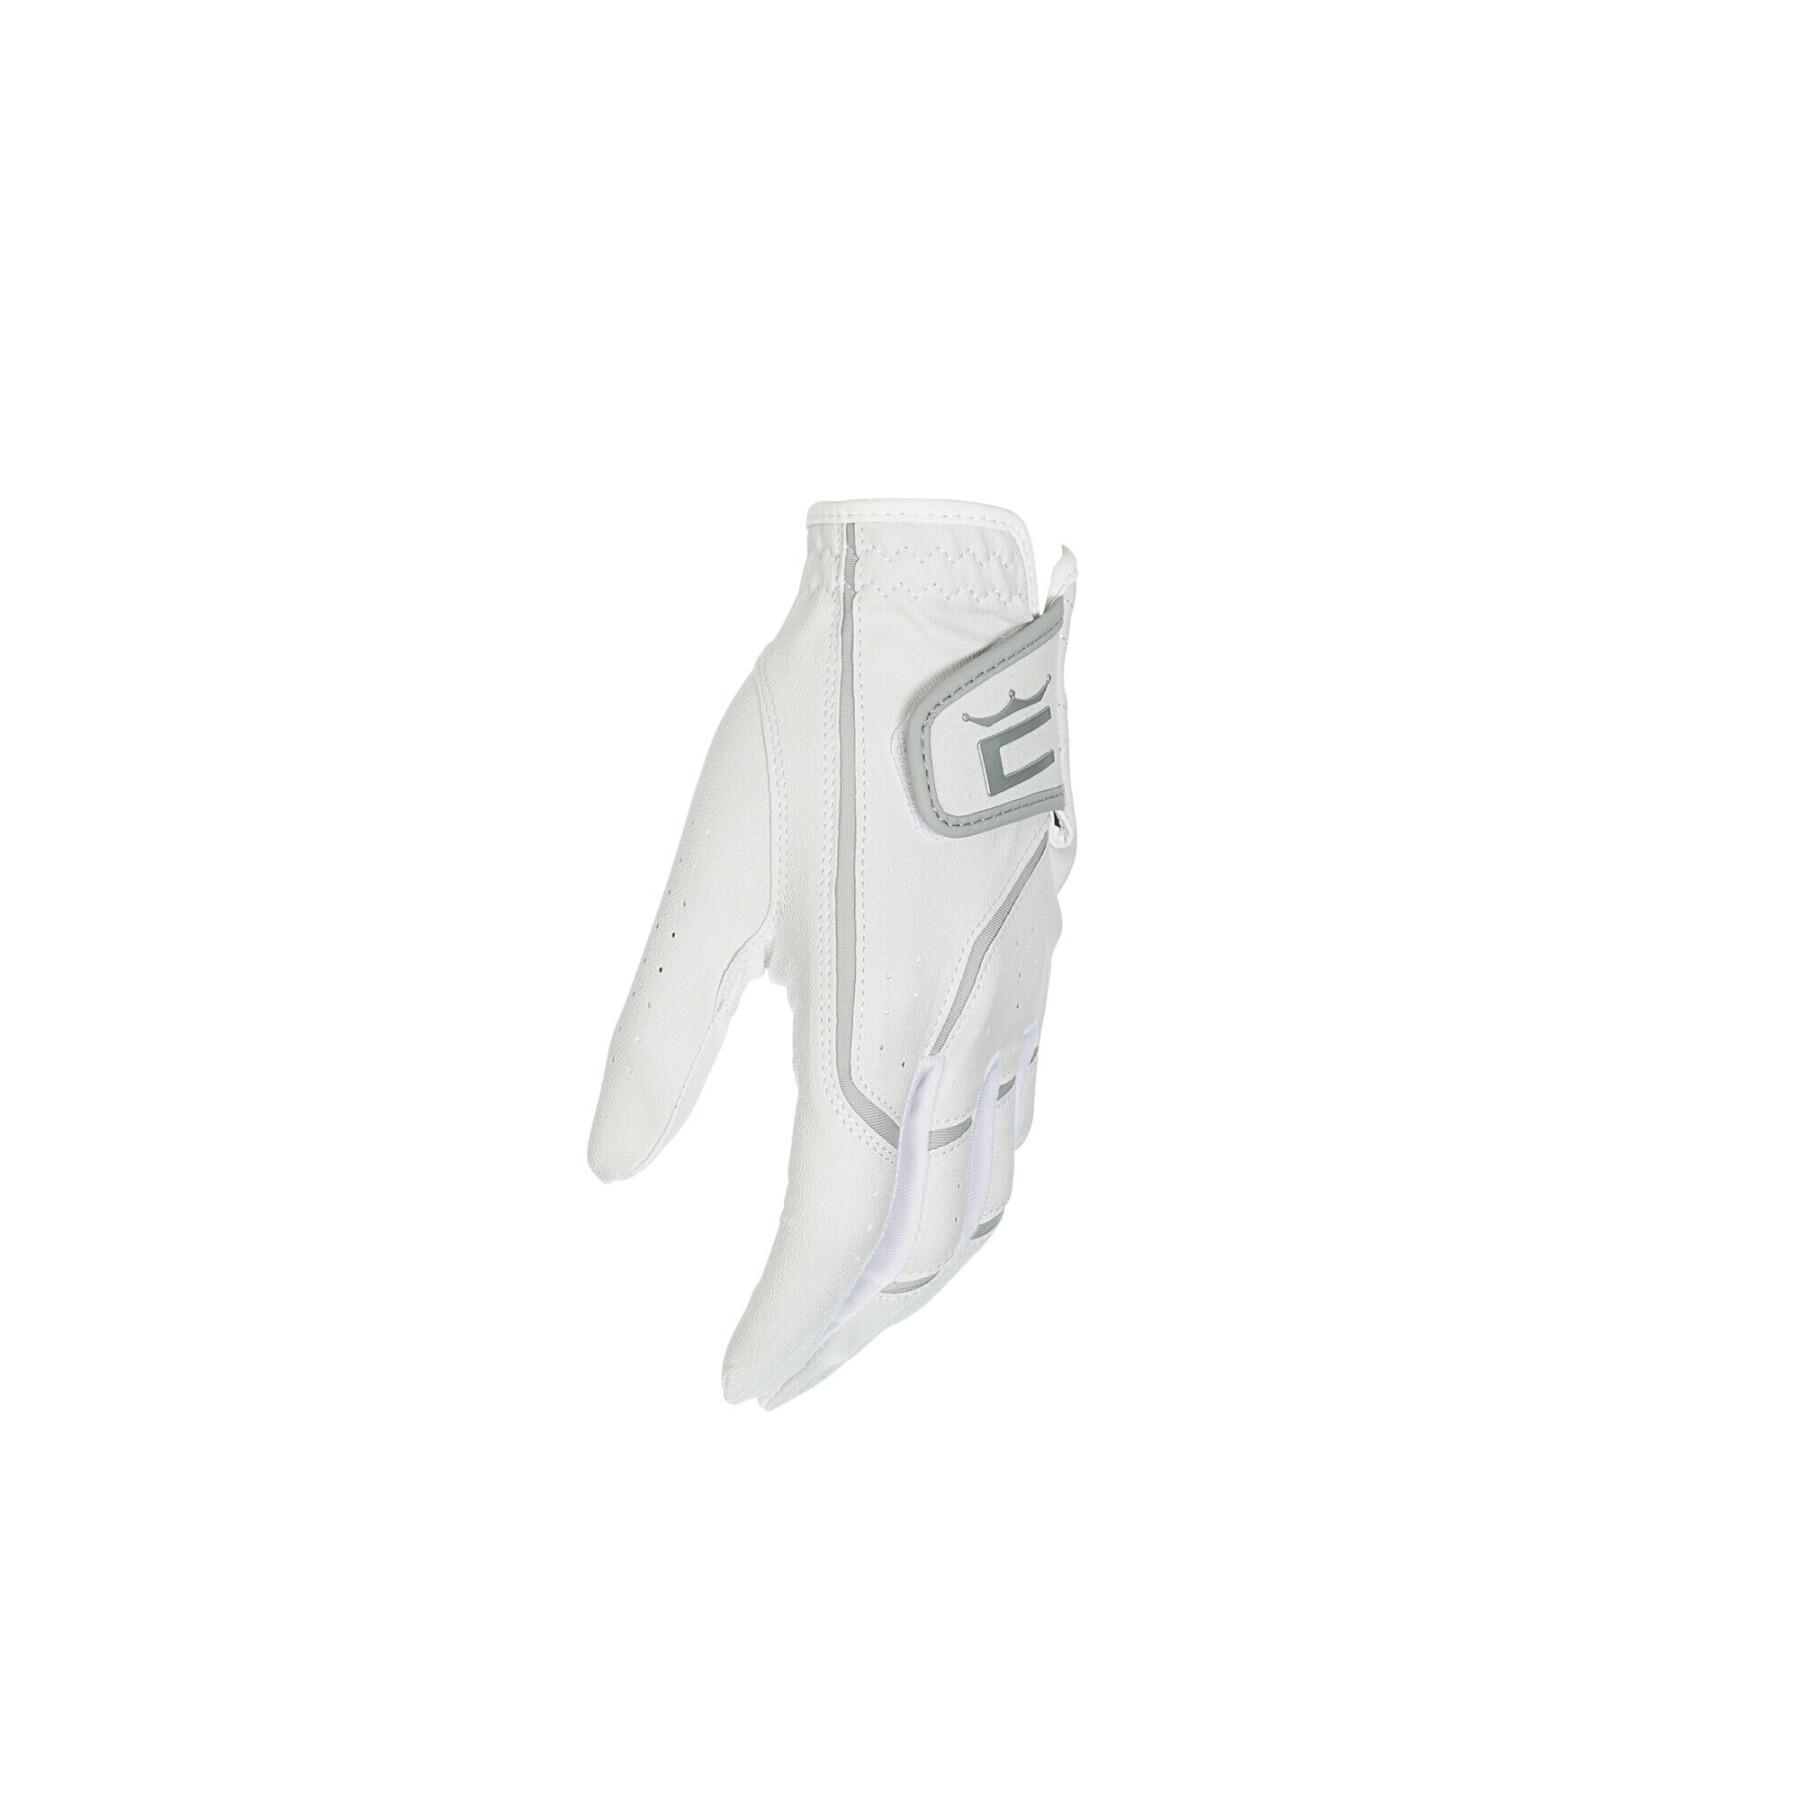 Microgrip flex lh gloves (women)